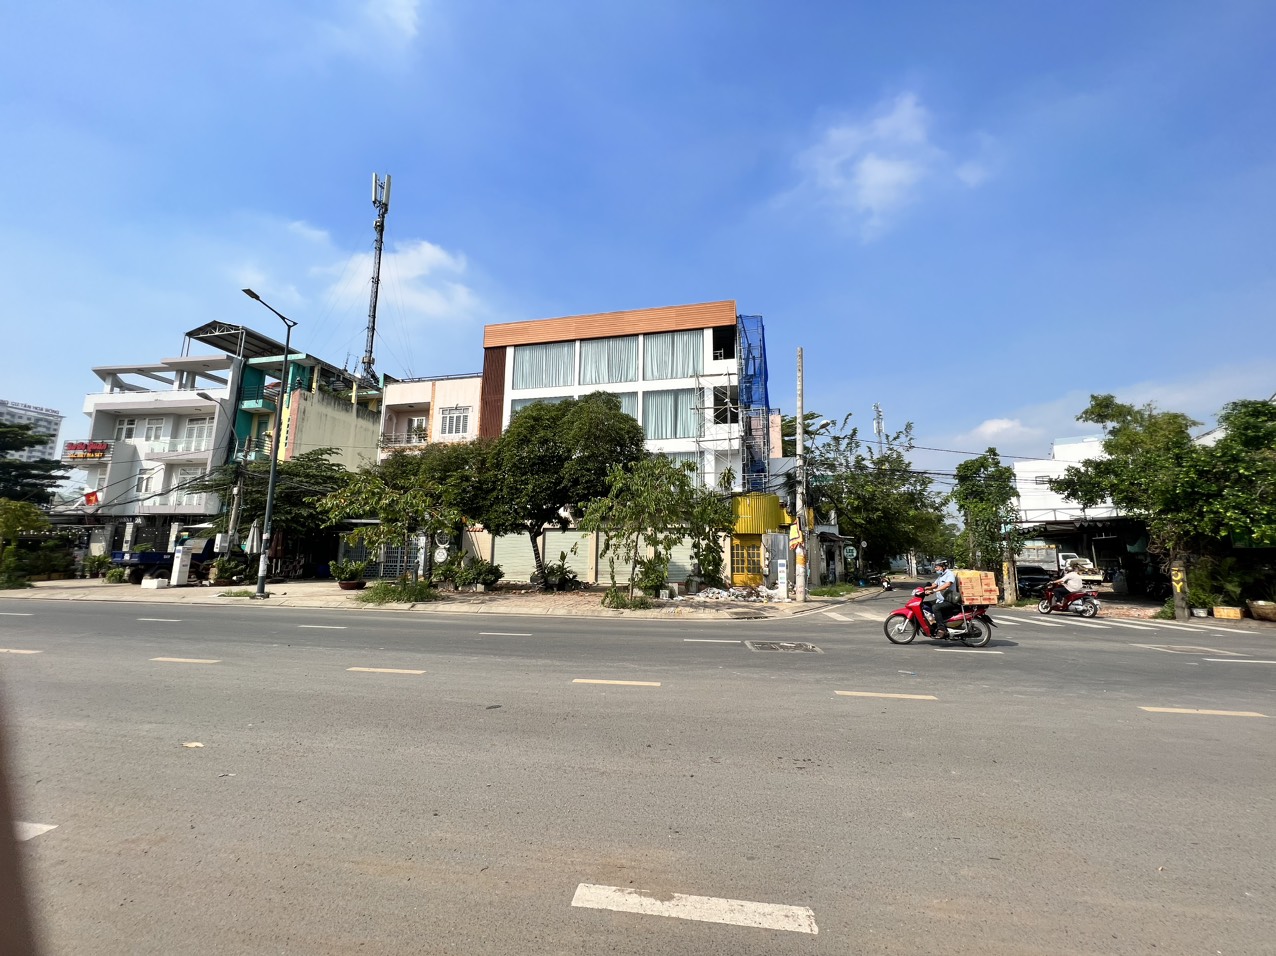  Bán nhà góc 2MTKD đường Tộ Hiệu,Q.Tân Phú,DT 17x7m, 1 trệt 3 lầu, Gía 20 tỷ TL